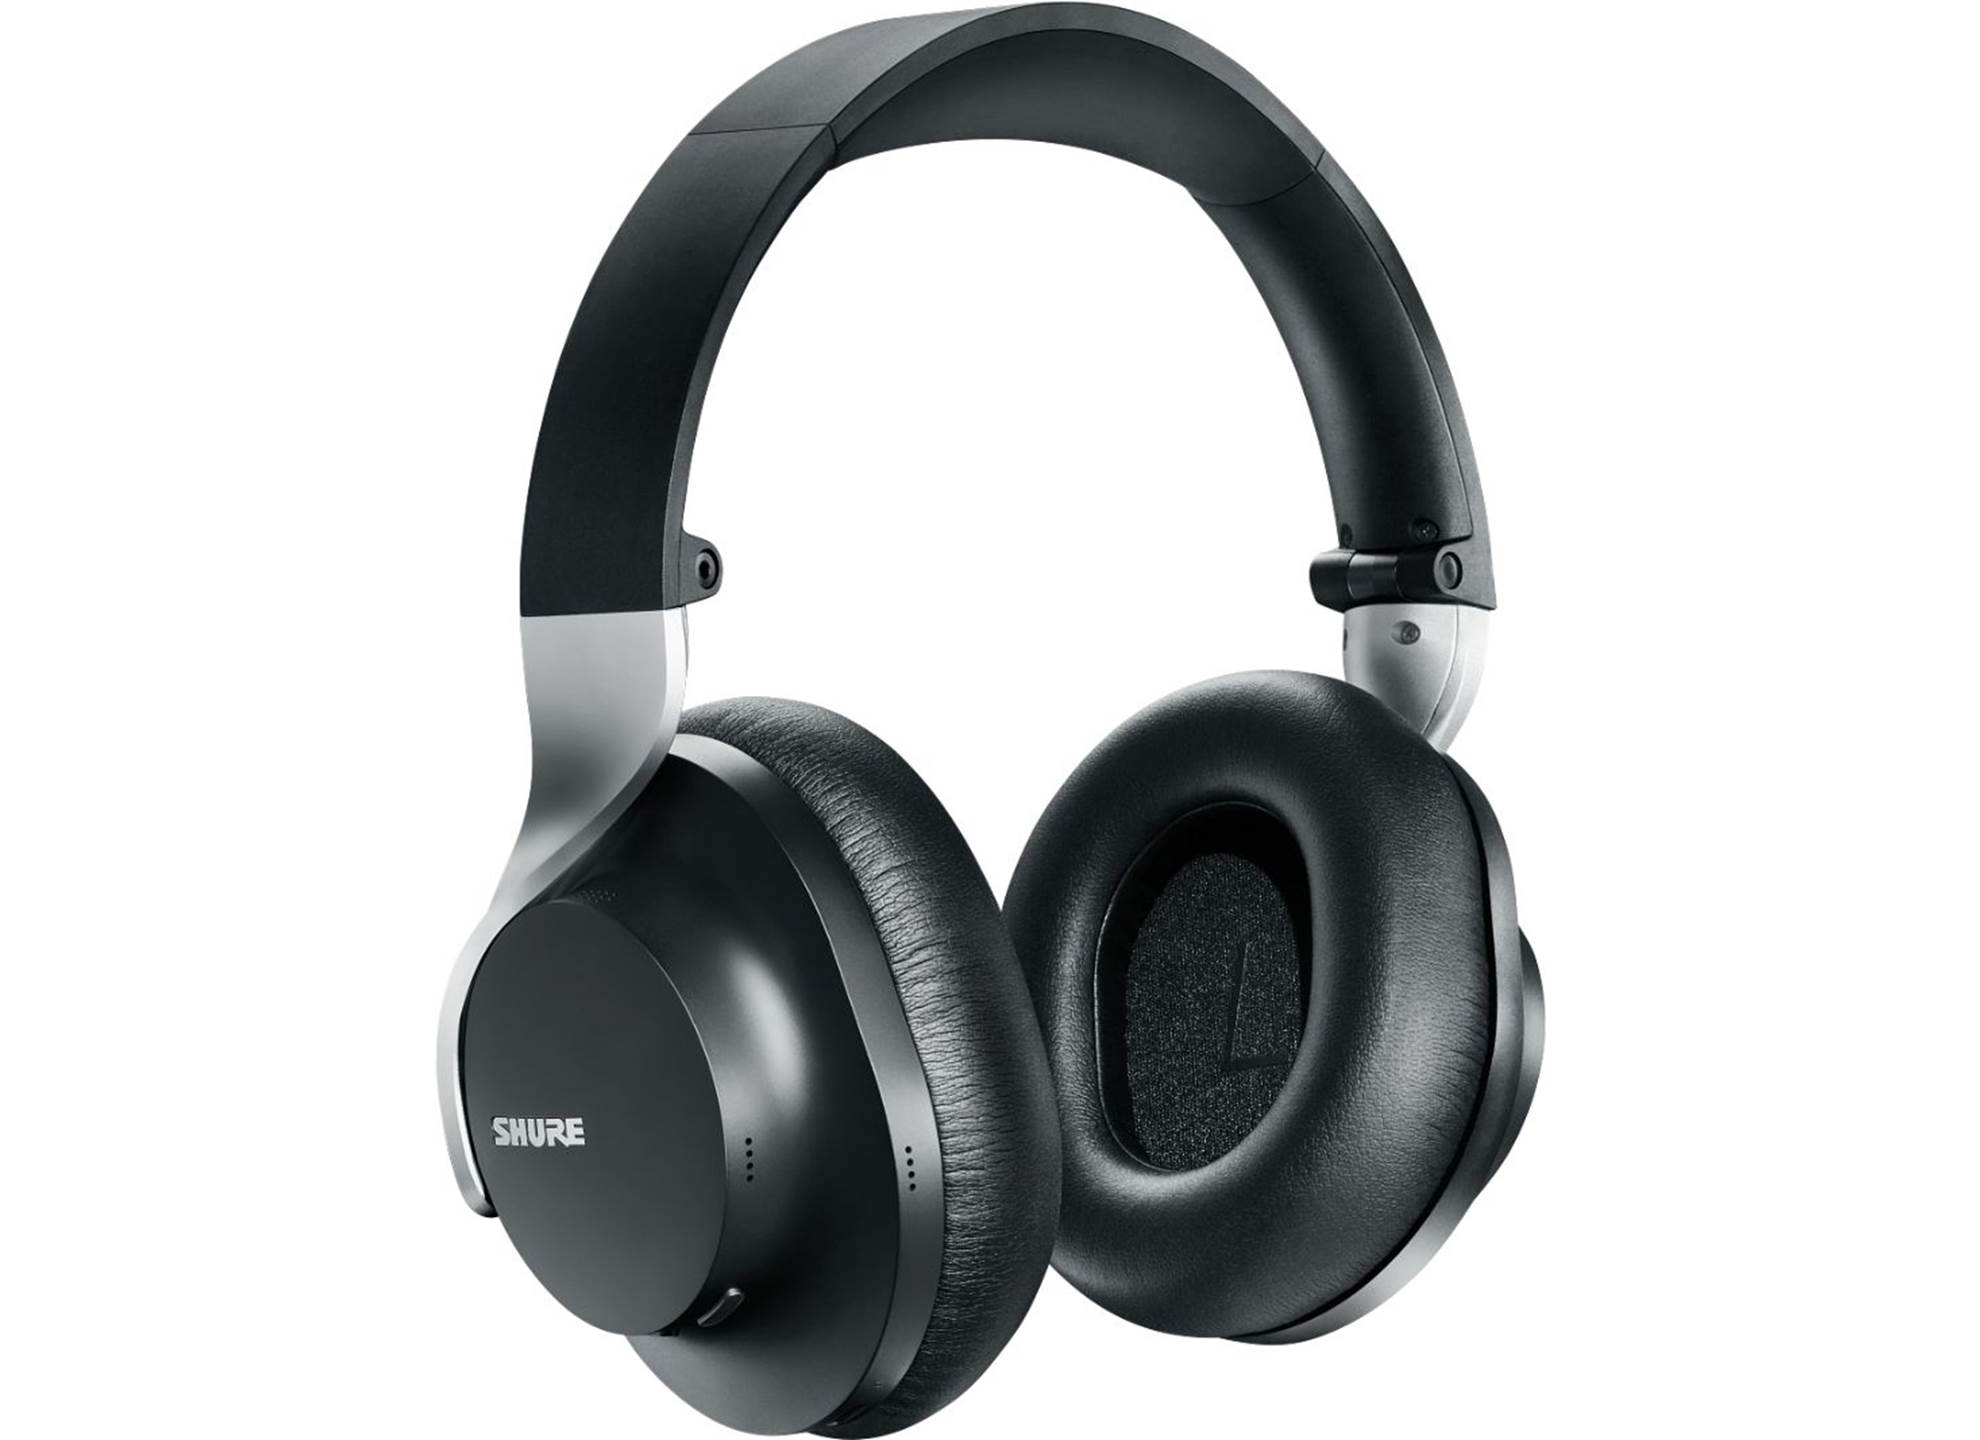 Aonic 40 Premium Wireless Headphones Black